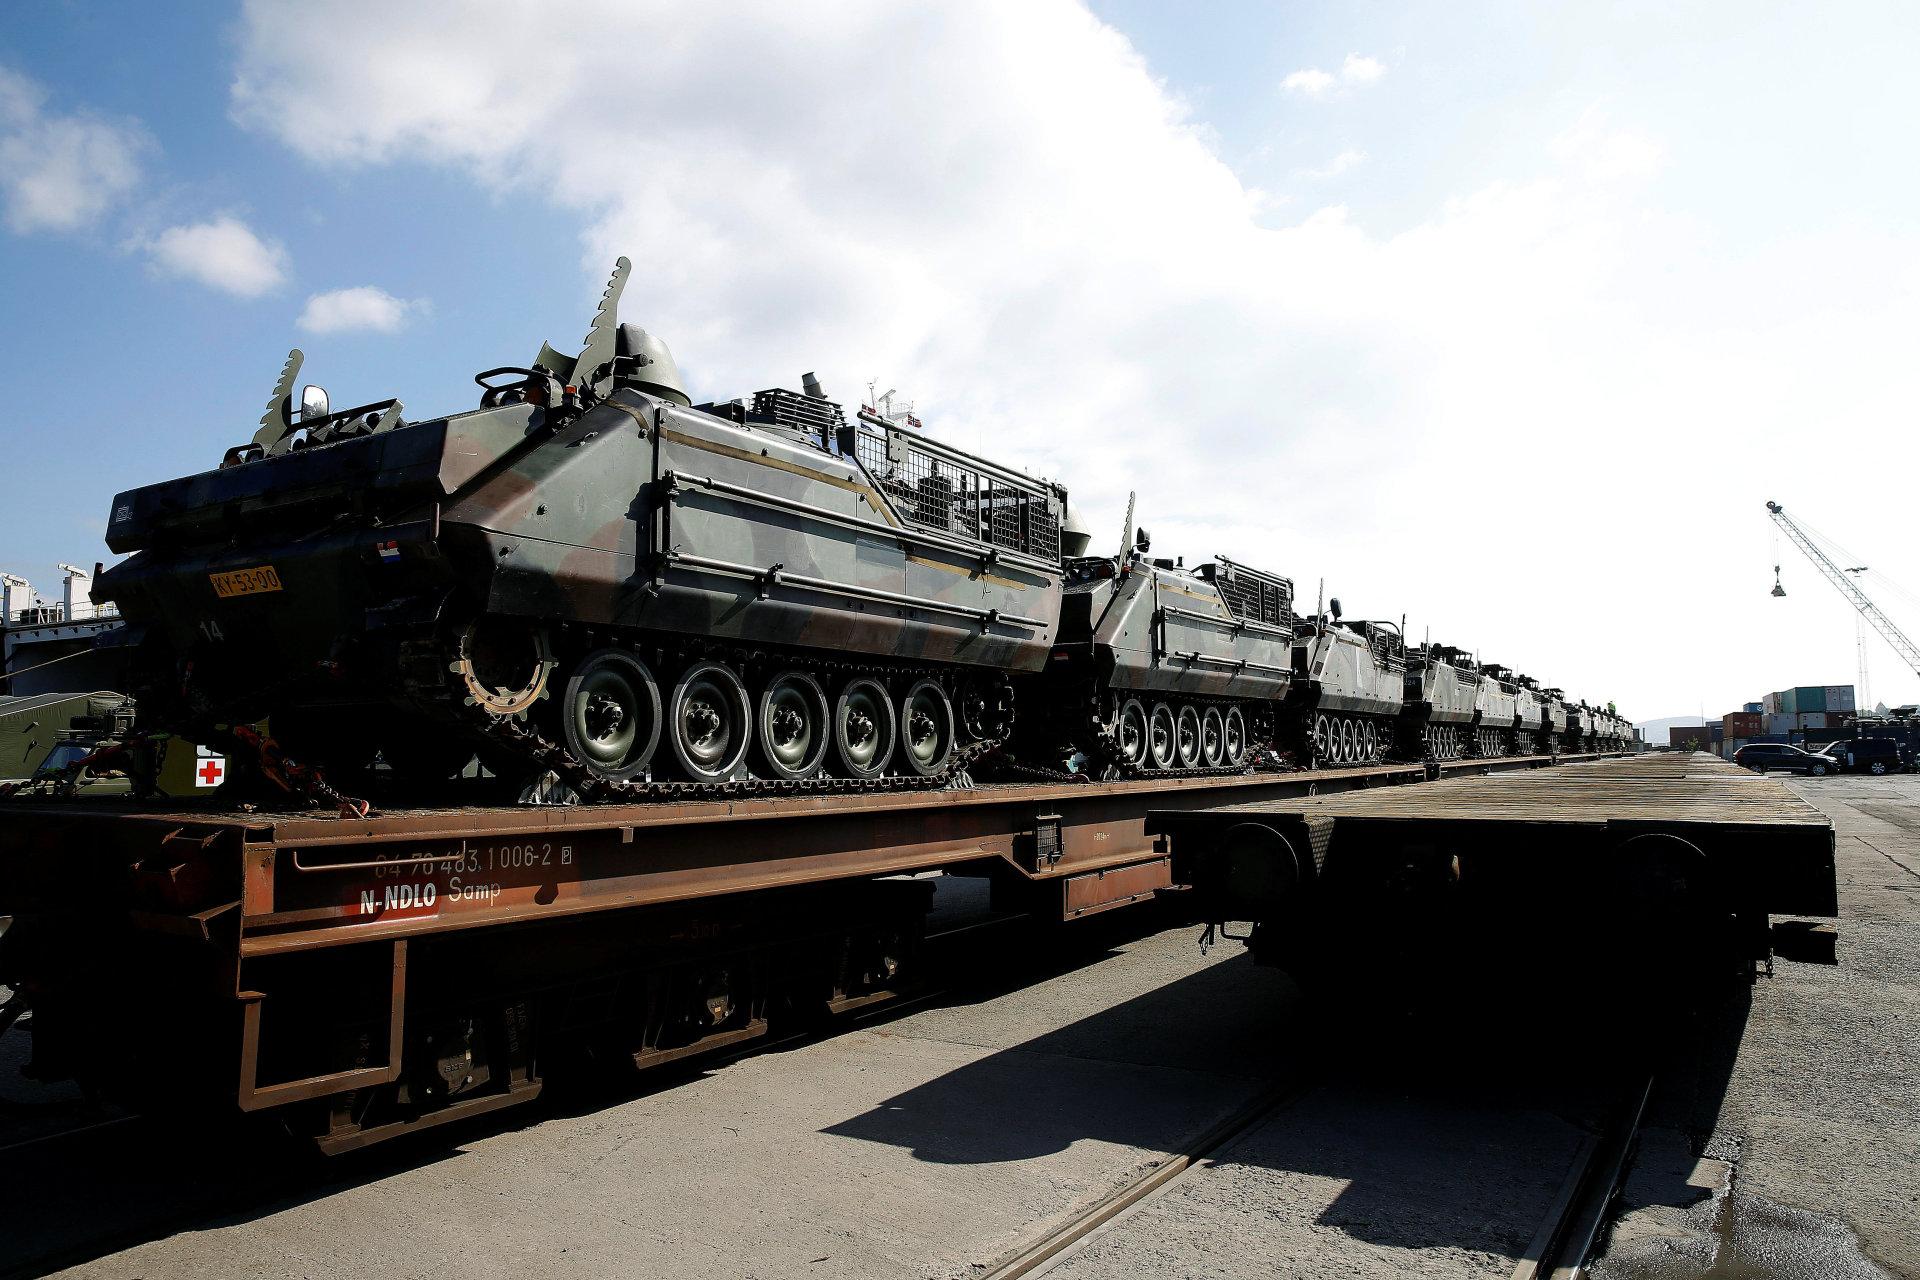 Det aller første toget med militært materiell til bruk under NATO-øvelsen Trident Juncture, ankom Alnabru i Oslo torsdag ettermiddag. I alt skal over 10.000 kjøretøy på plass før øvelsen starter.